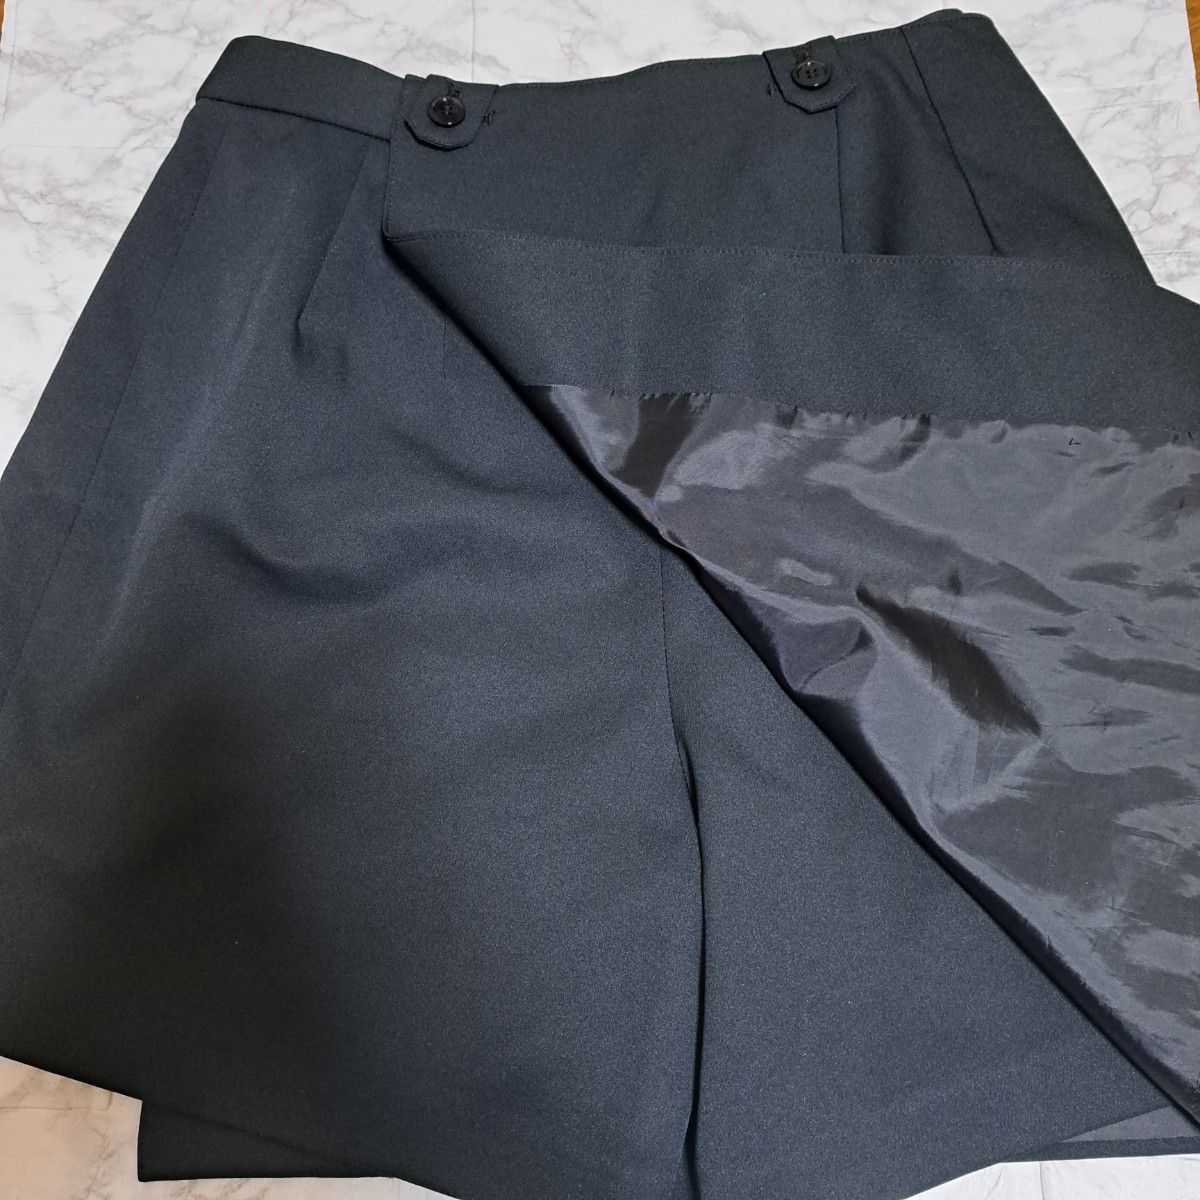 【proama】ボーリング キュロット巻きスカート Mサイズ ブラック 黒 ゴルフ キュロットパンツ